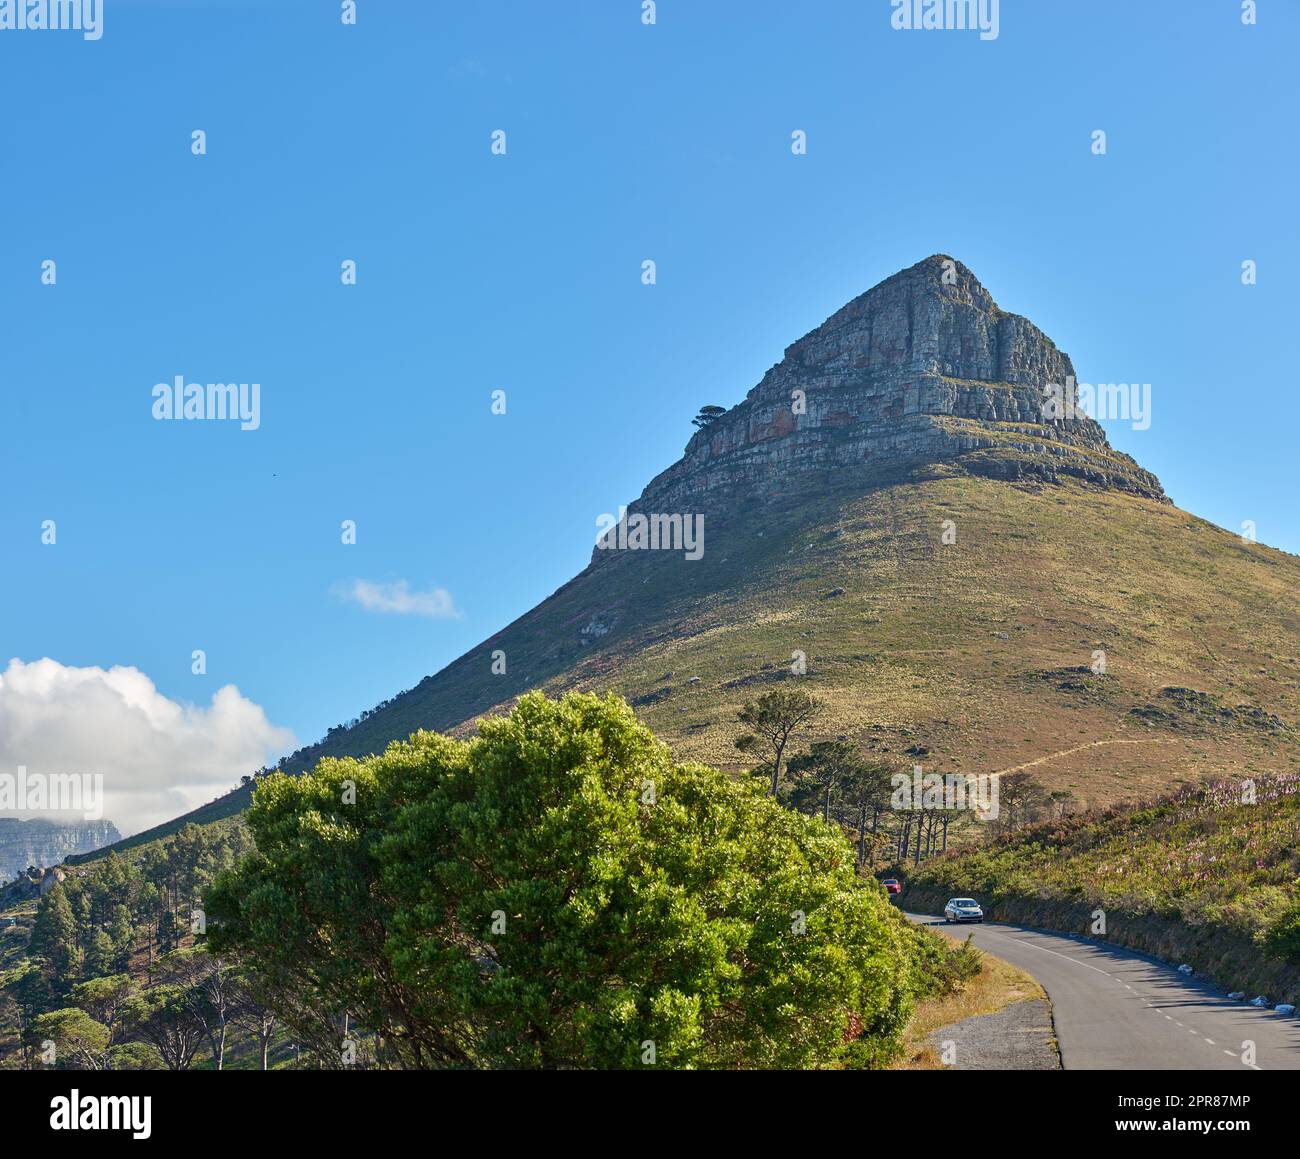 Copiez l'espace avec vue panoramique sur la montagne de Lions Head au Cap, en Afrique du Sud, sur fond bleu ciel. Magnifique vue panoramique d'un site emblématique à voyager, explorer et passer par la route Banque D'Images